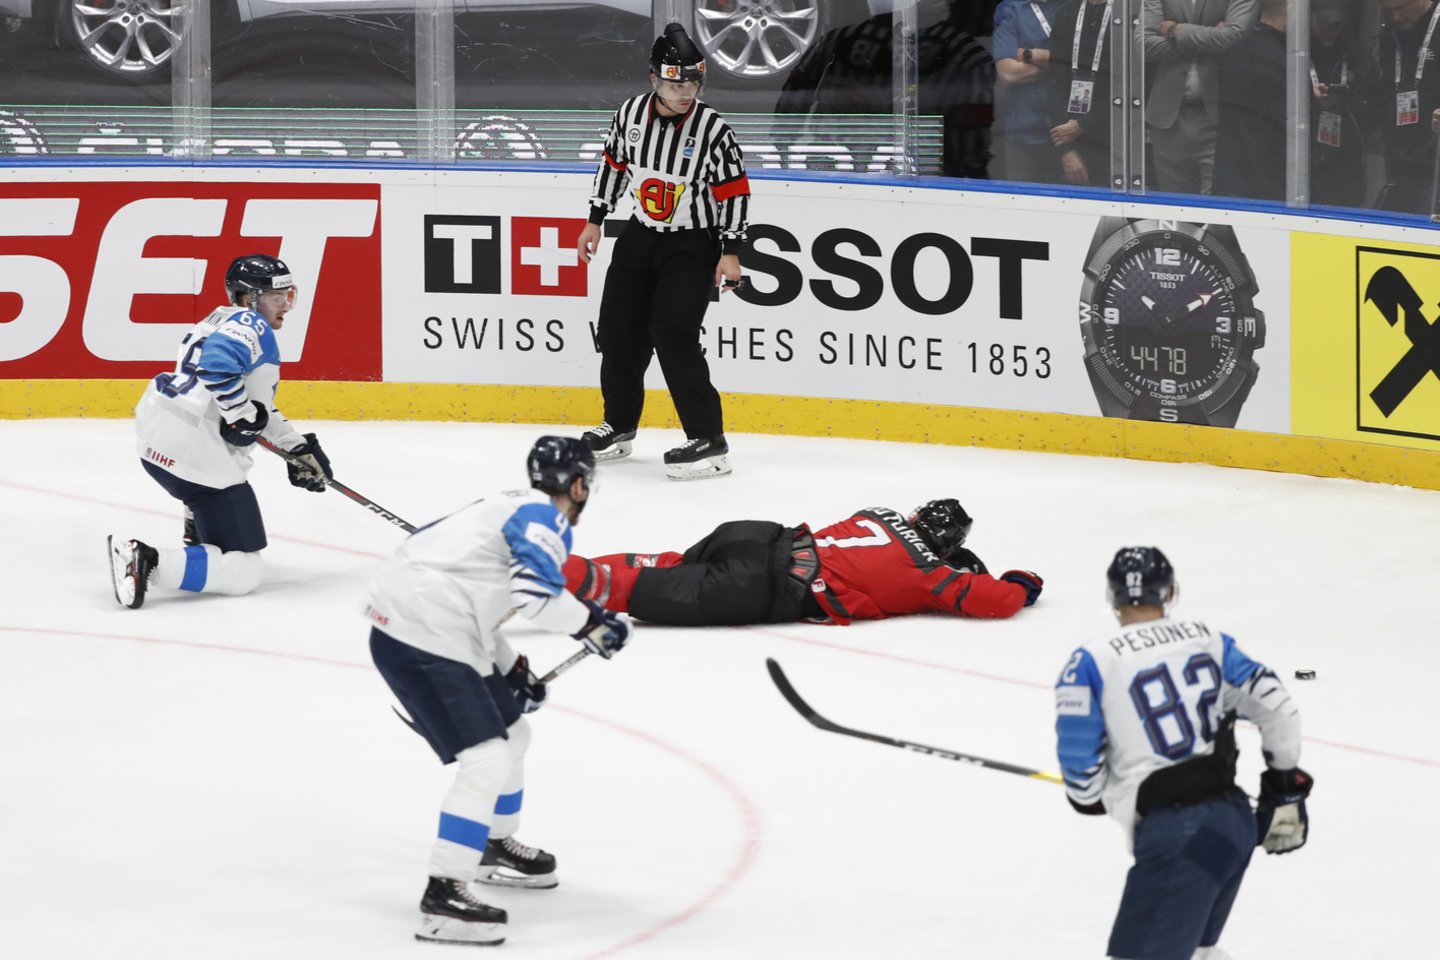 Suomija įveikė Kanadą ir tapo pasaulio čempione.<br> Reuters/Sputnik/Scanpix nuotr.